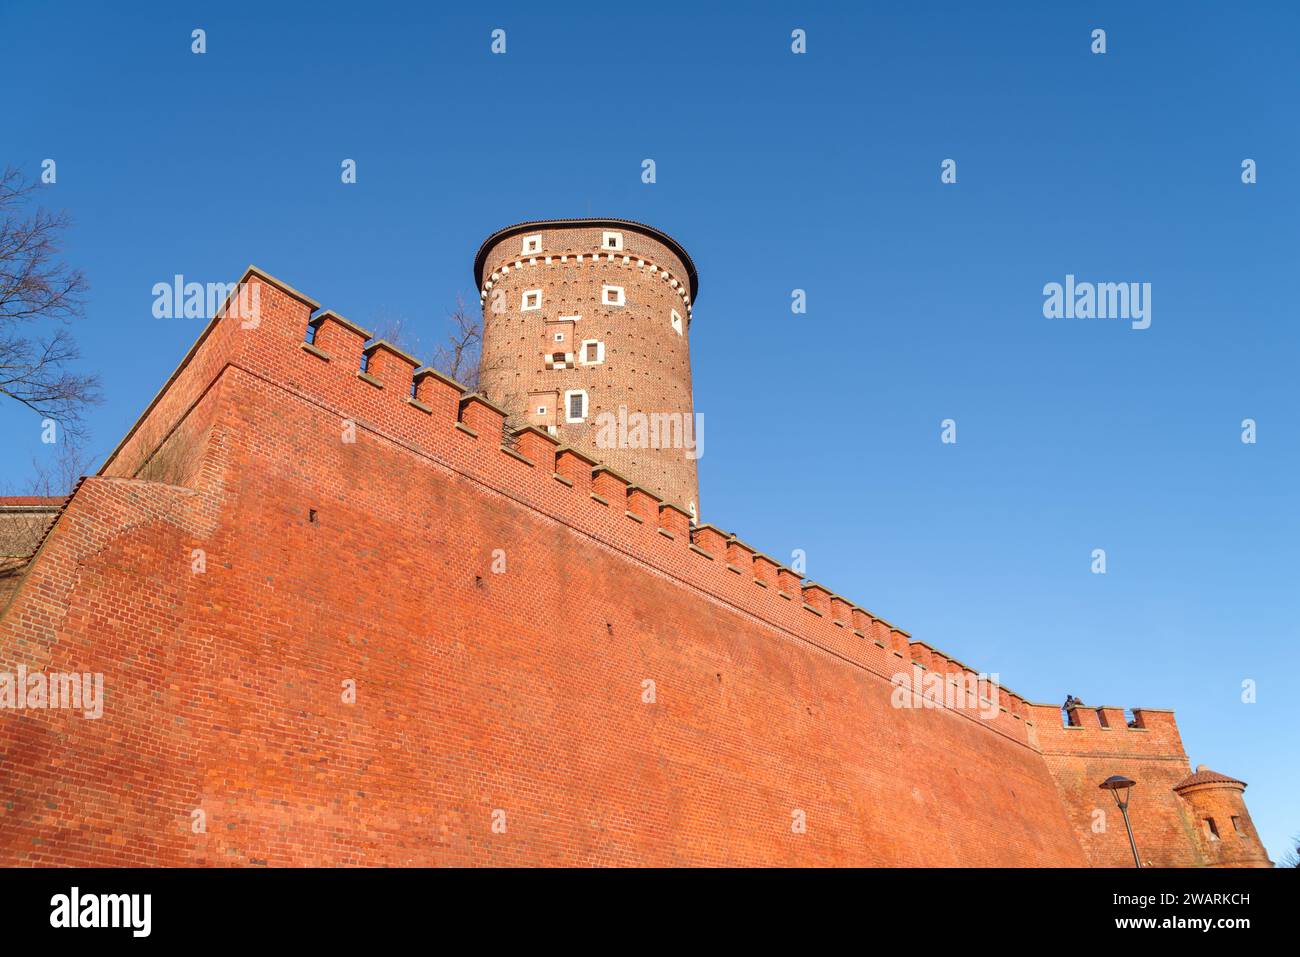 Extérieur du célèbre château de Wawel à Cracovie, Pologne. C'est une résidence fortifiée sur la Vistule et représente presque tout architectural européen Banque D'Images